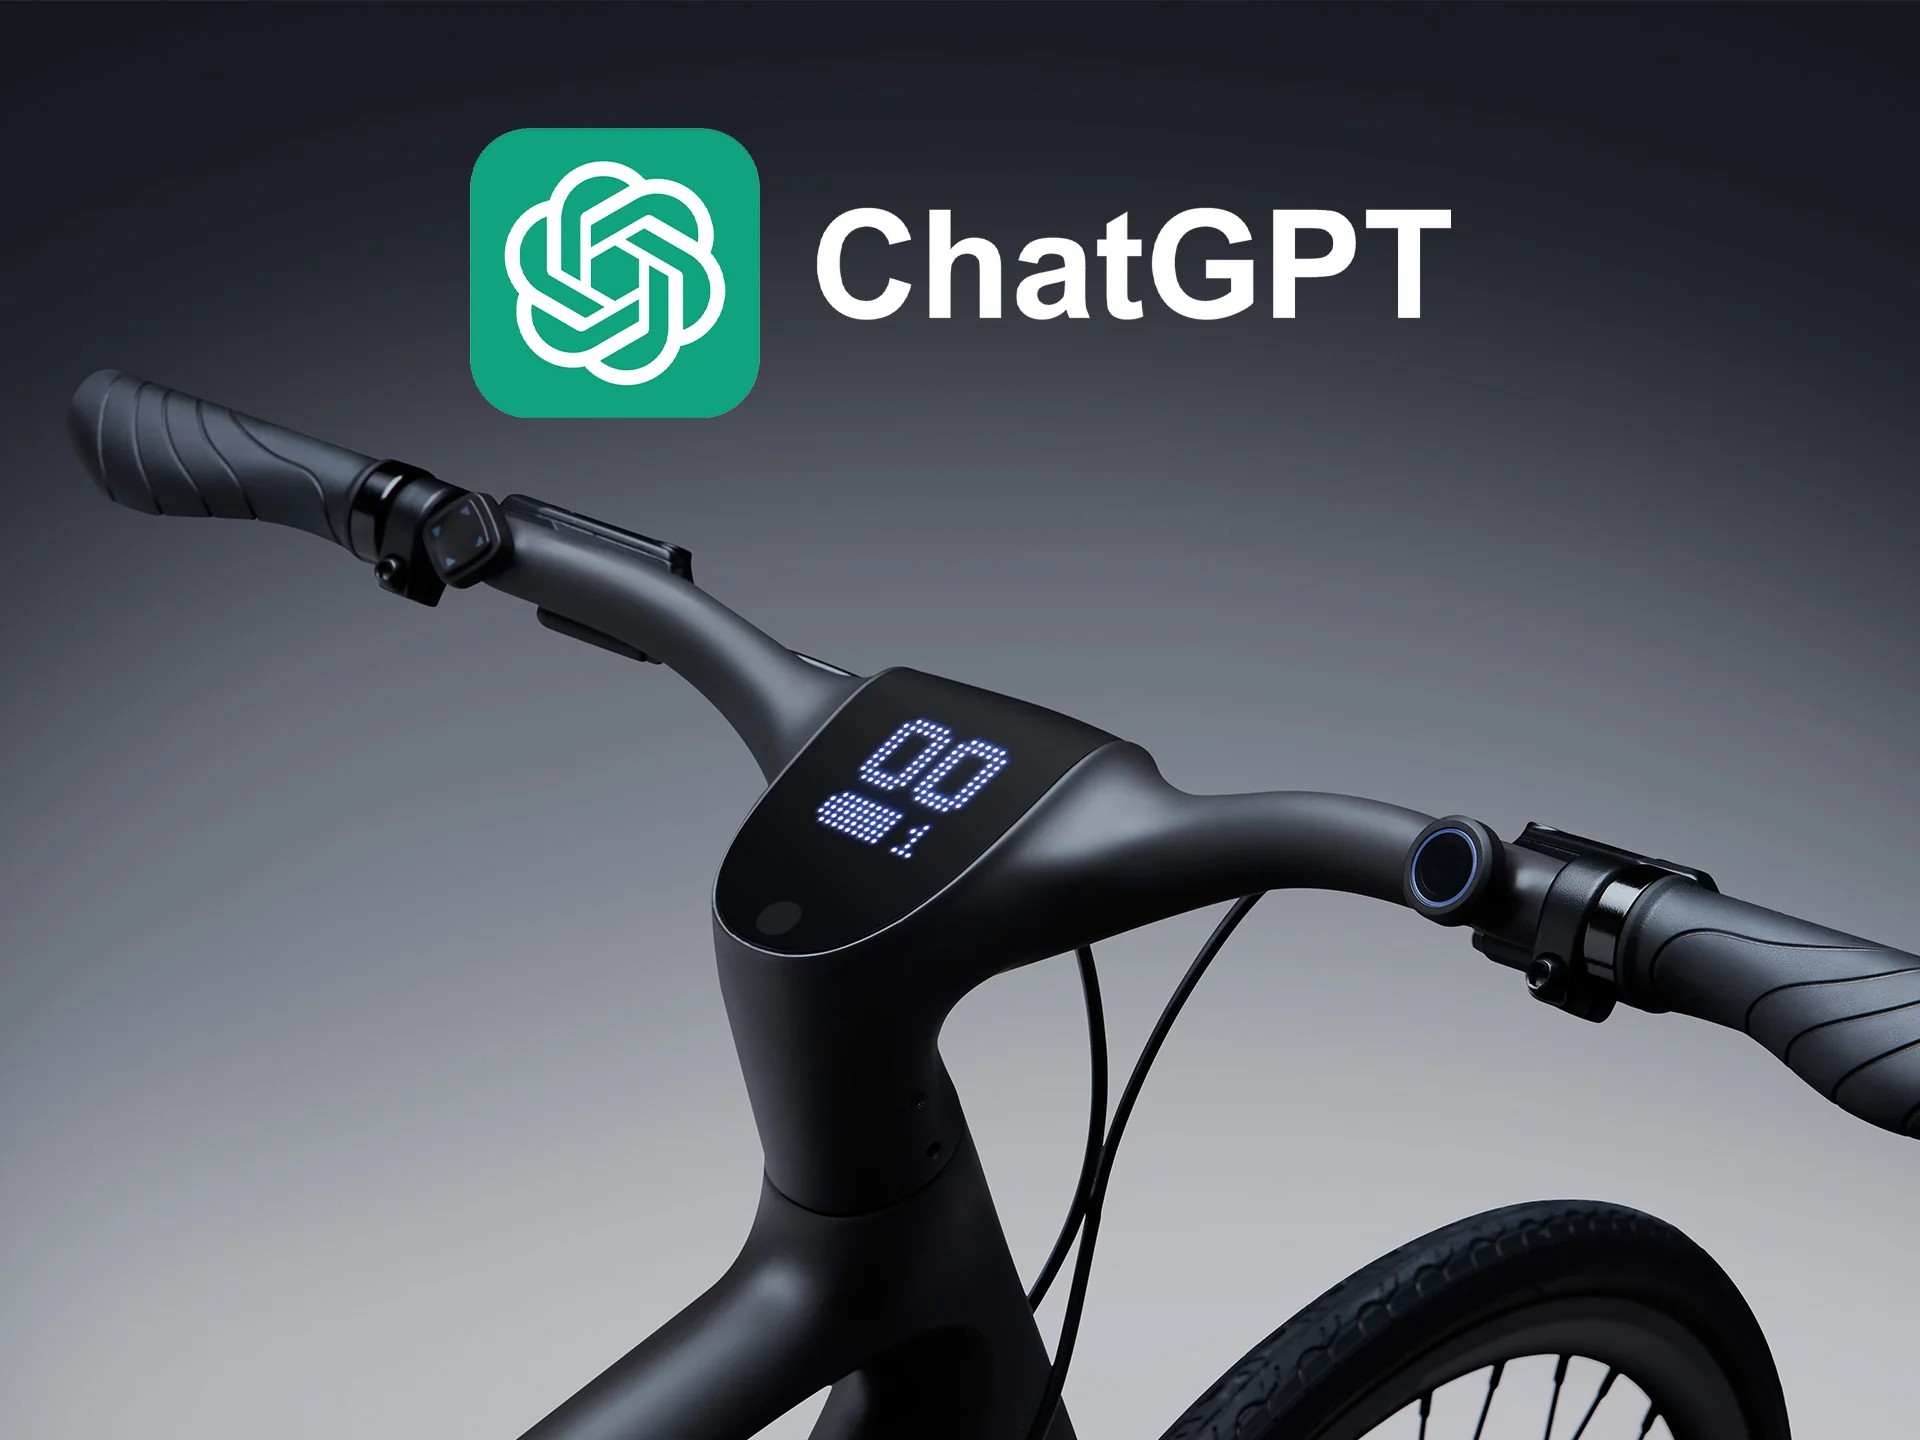 La smart e-bike Urtopia con ChatGPT è stata presentata insieme al nuovo modello Fusion